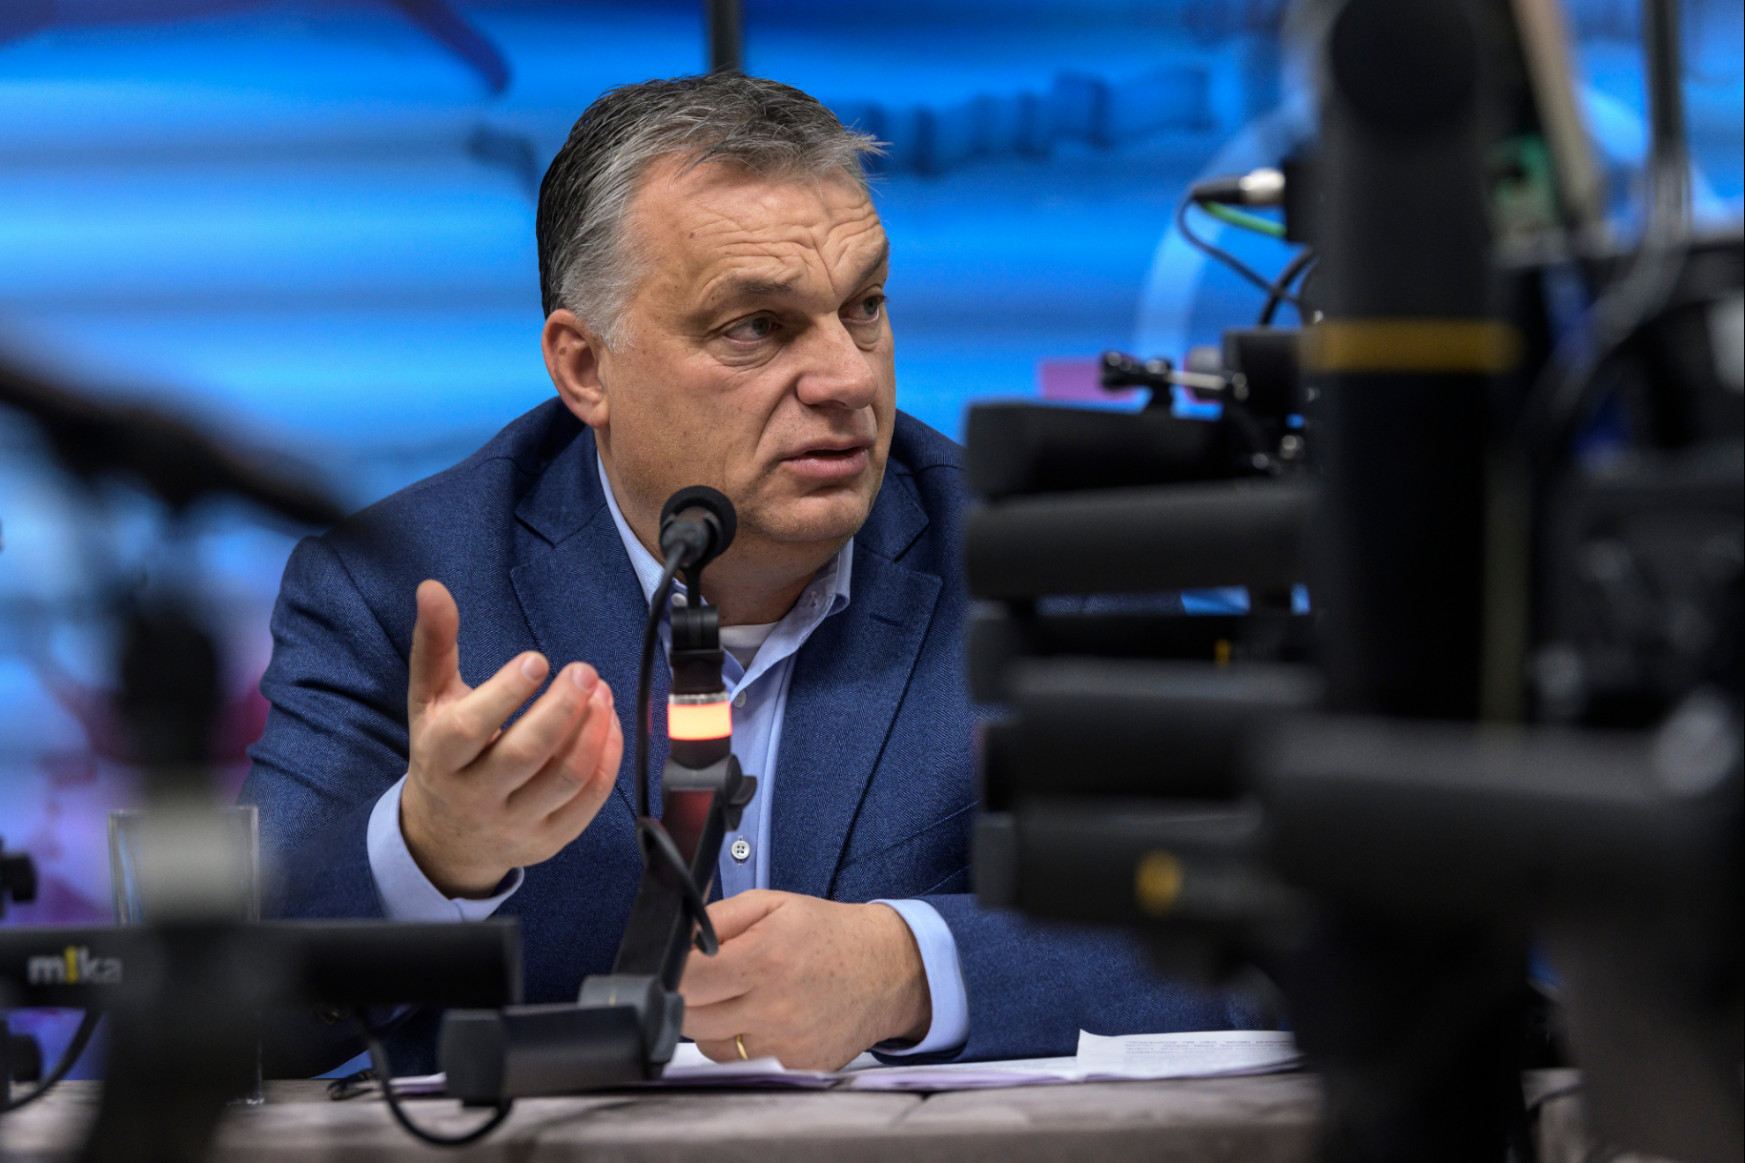 Nyolc civil szervezet fordult az ombudsmanhoz Orbán mondatai miatt